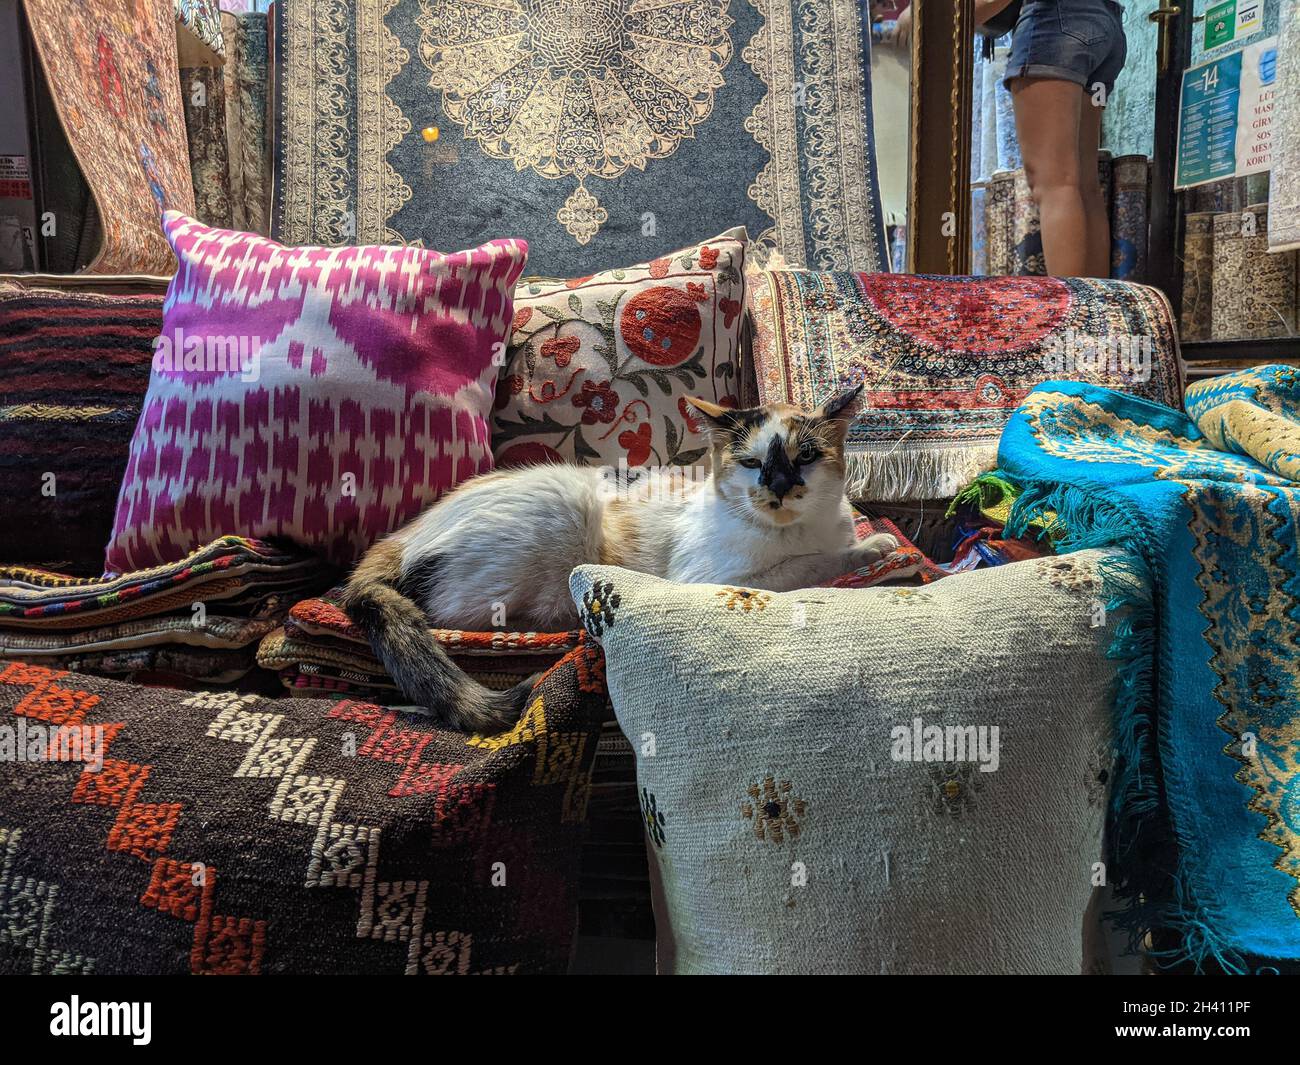 ISTANBUL, TURQUIE - 9 AOÛT 2021 : chat errant debout sur des oreillers traditionnels et des tapis turcs à l'entrée d'une boutique de tissus en t Banque D'Images